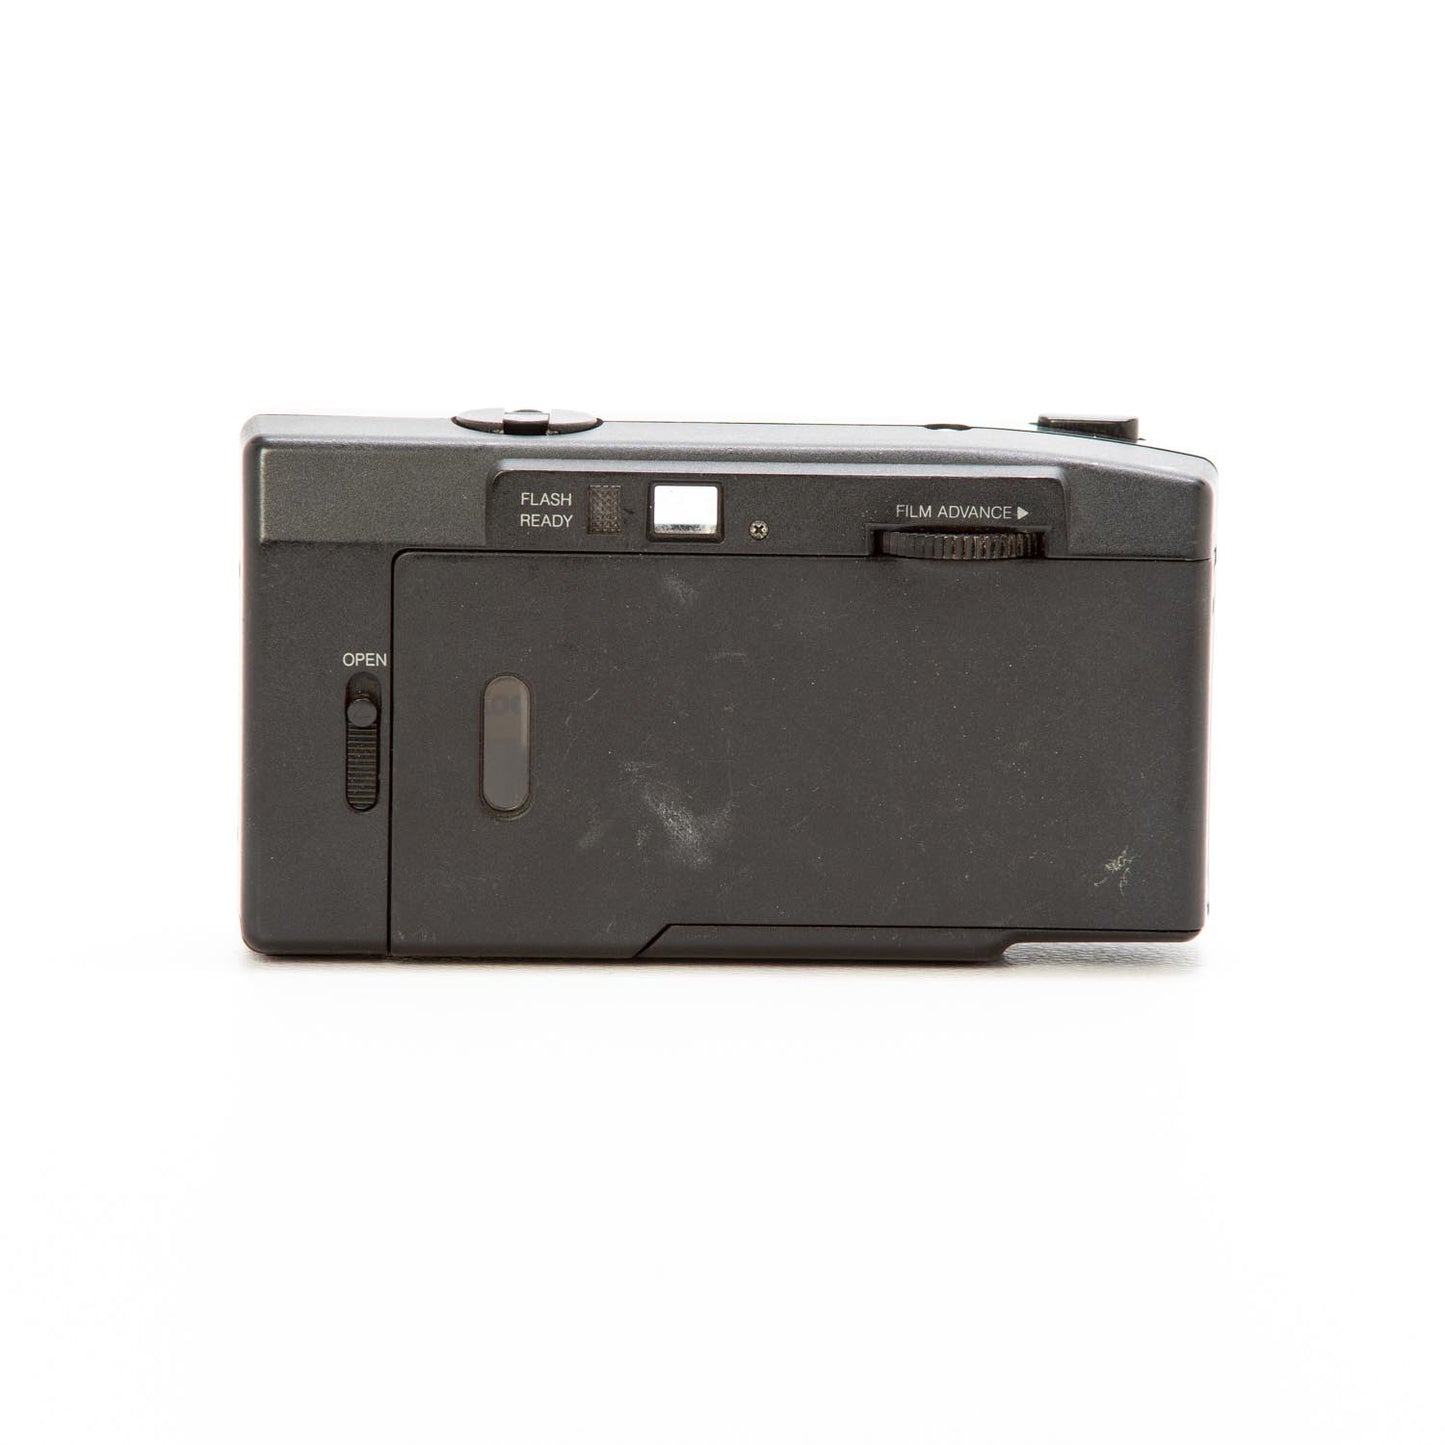 Kodak S100EF noir